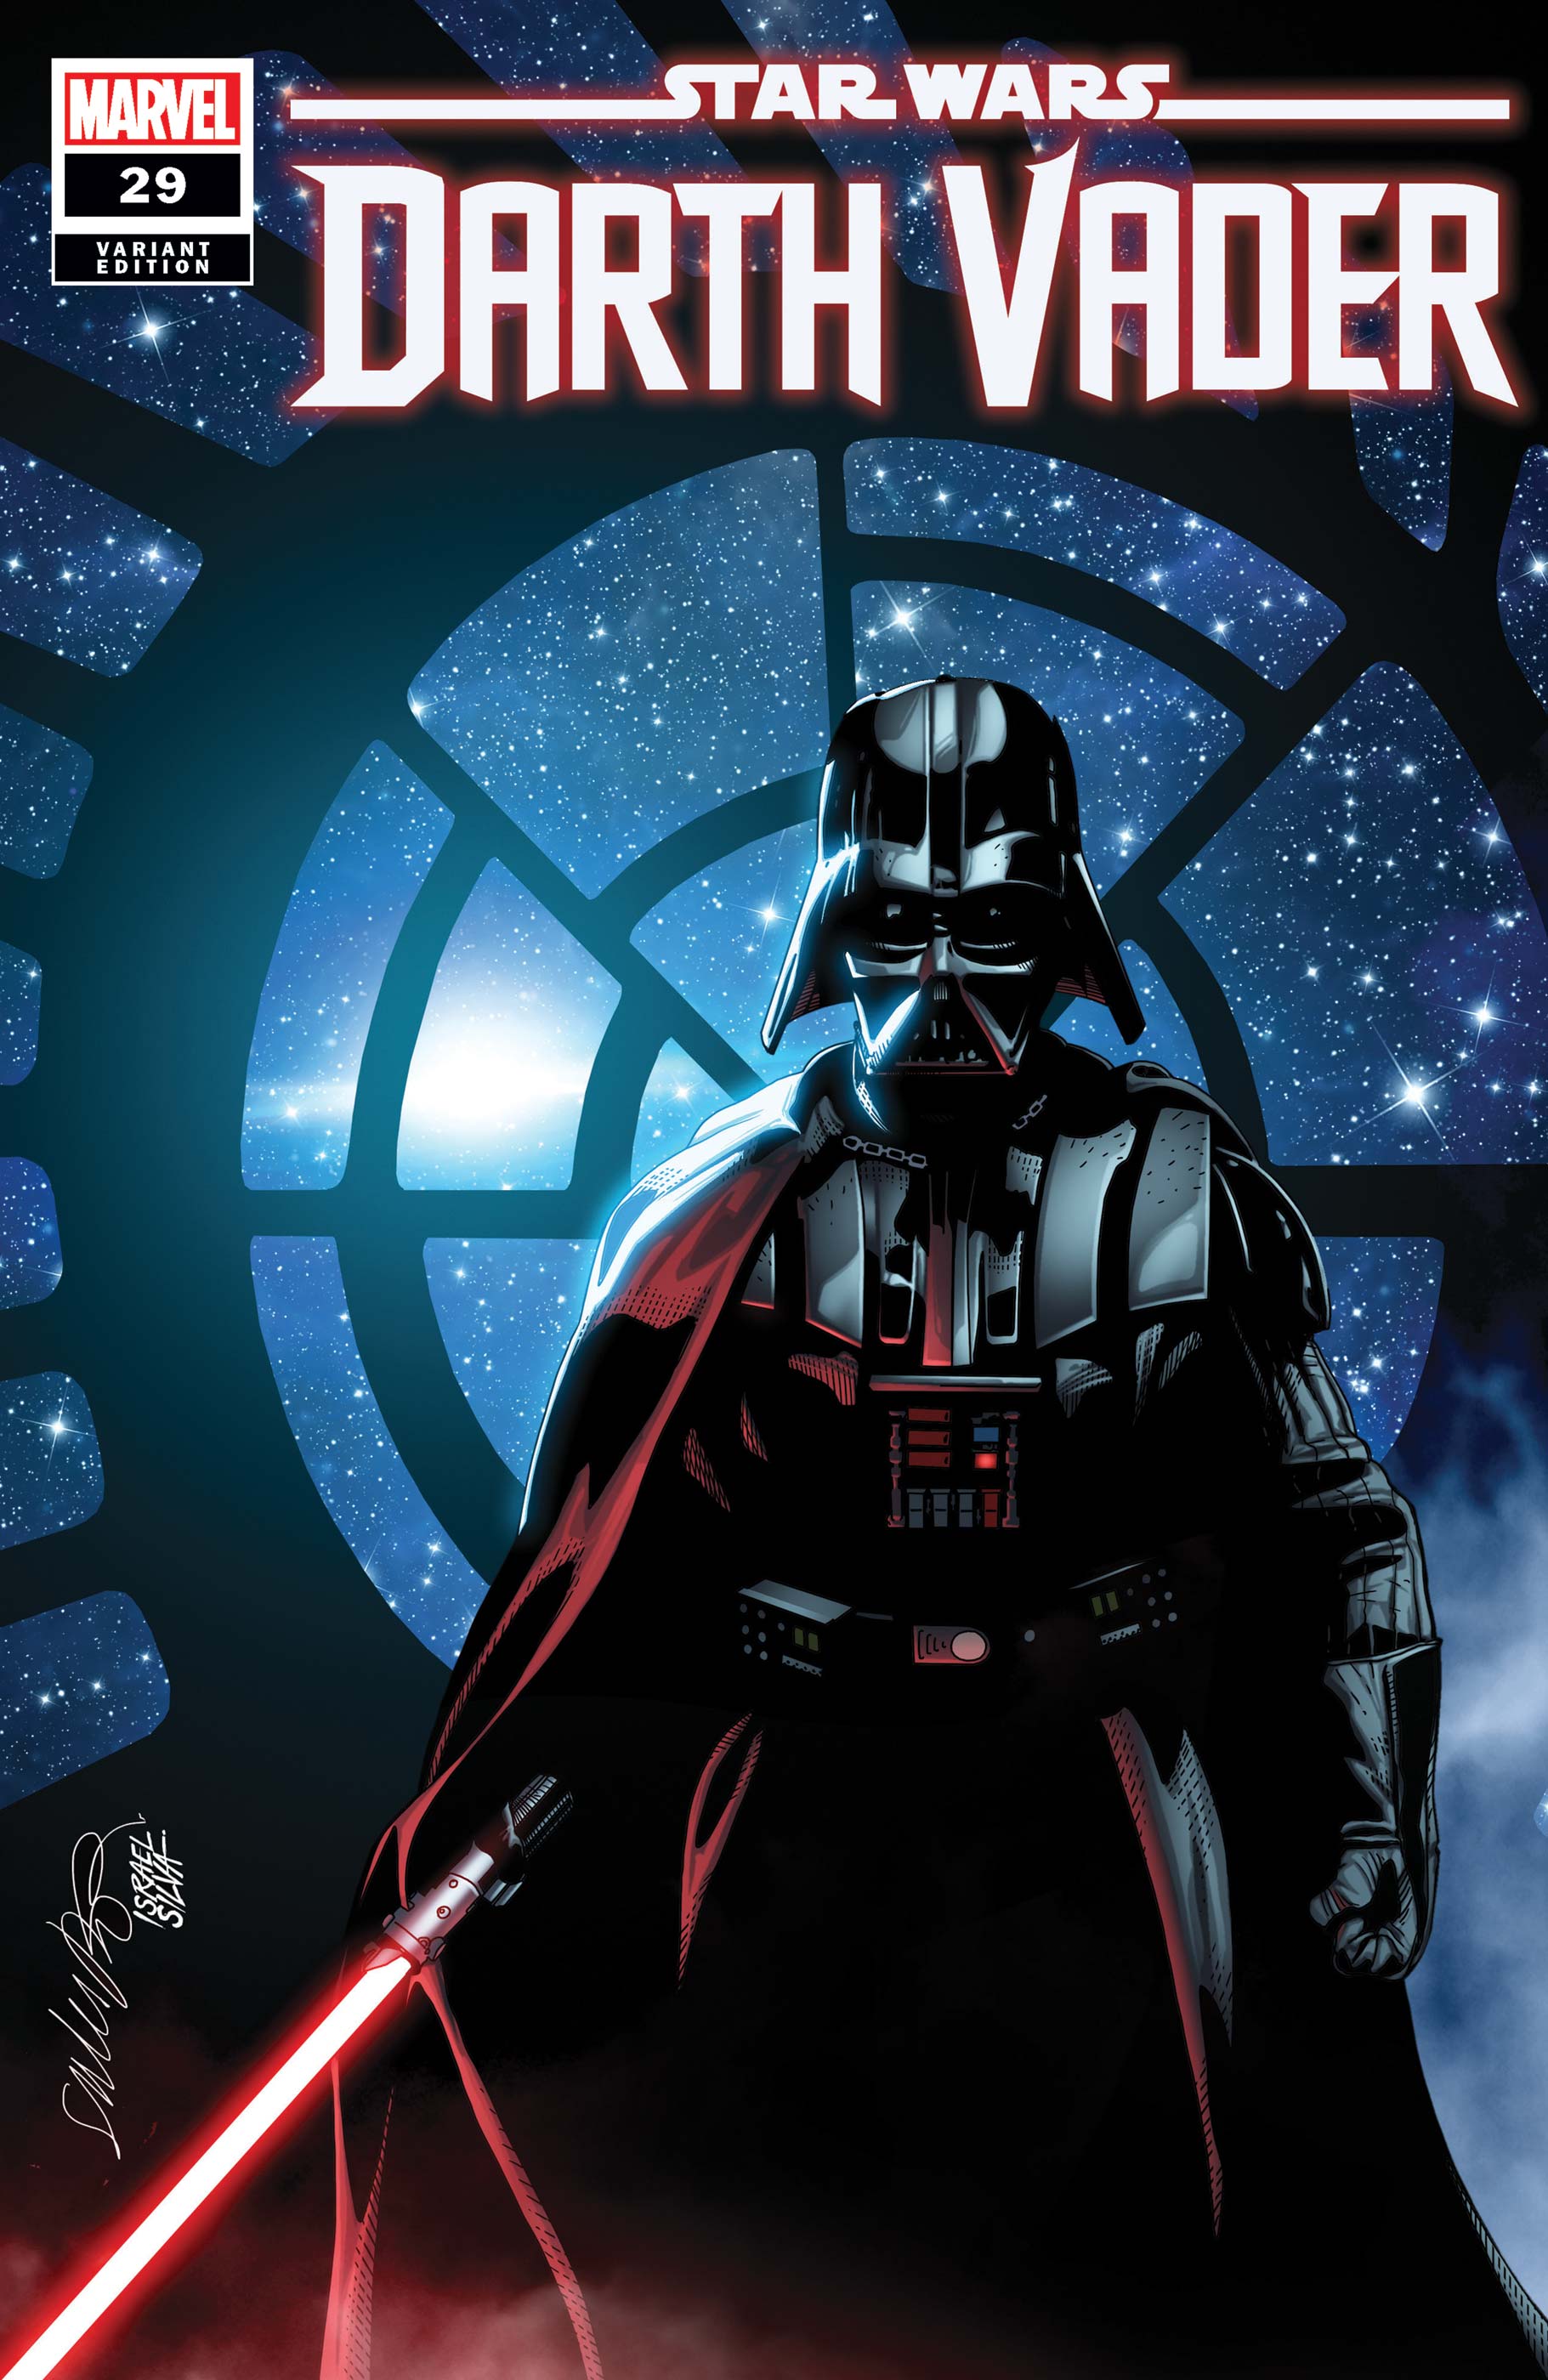 Star Wars: Darth Vader (2020) #29 (Variant)